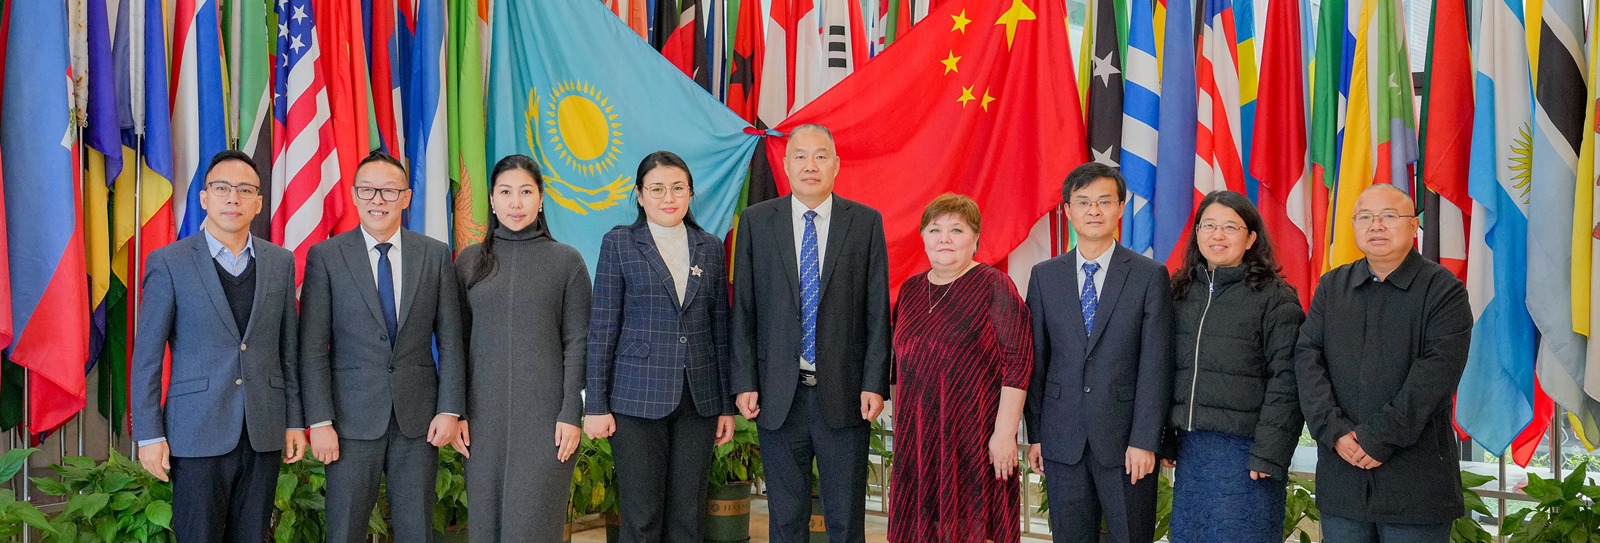 哈萨克斯坦阿布莱汗国际关系与外国语大学孔子学院第四届理事会会议在学校召开